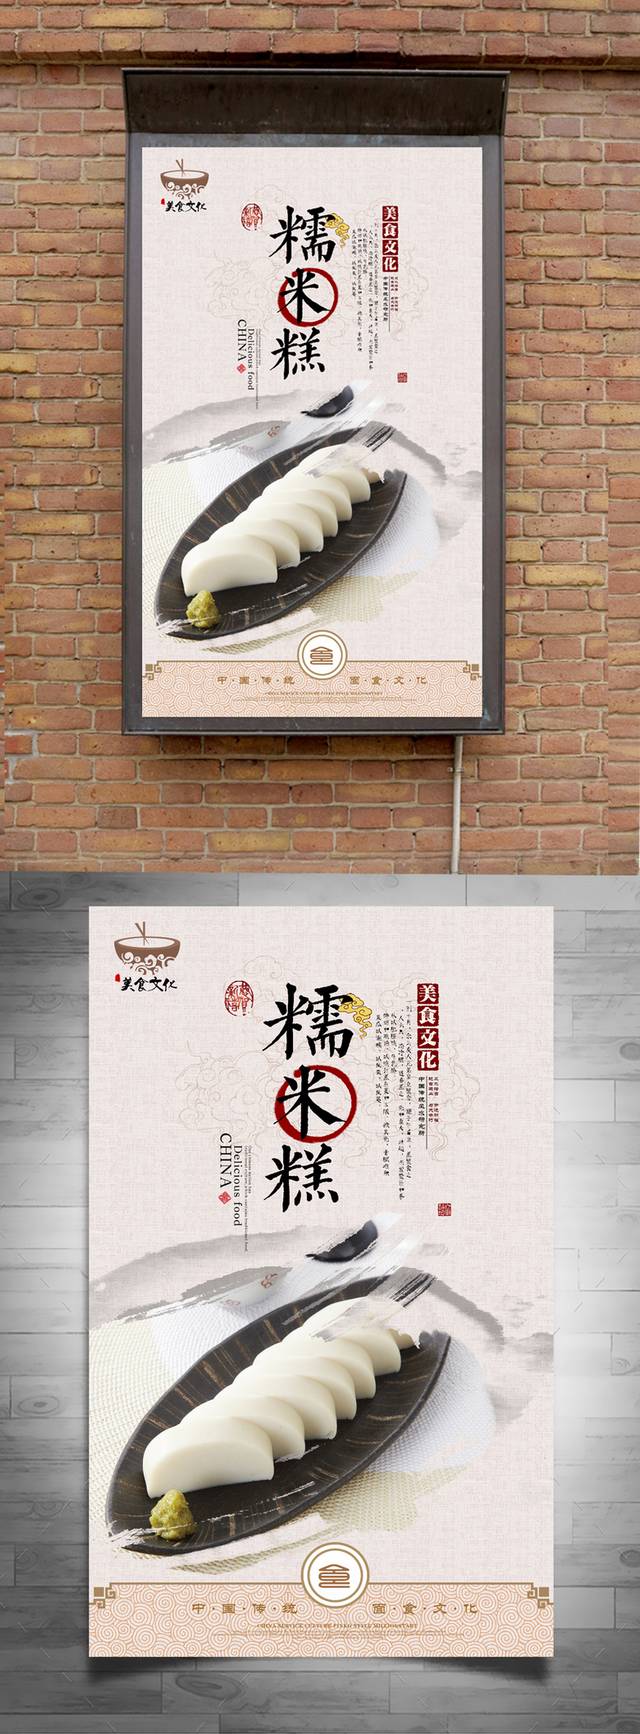 经典中国风糯米糕宣传海报设计